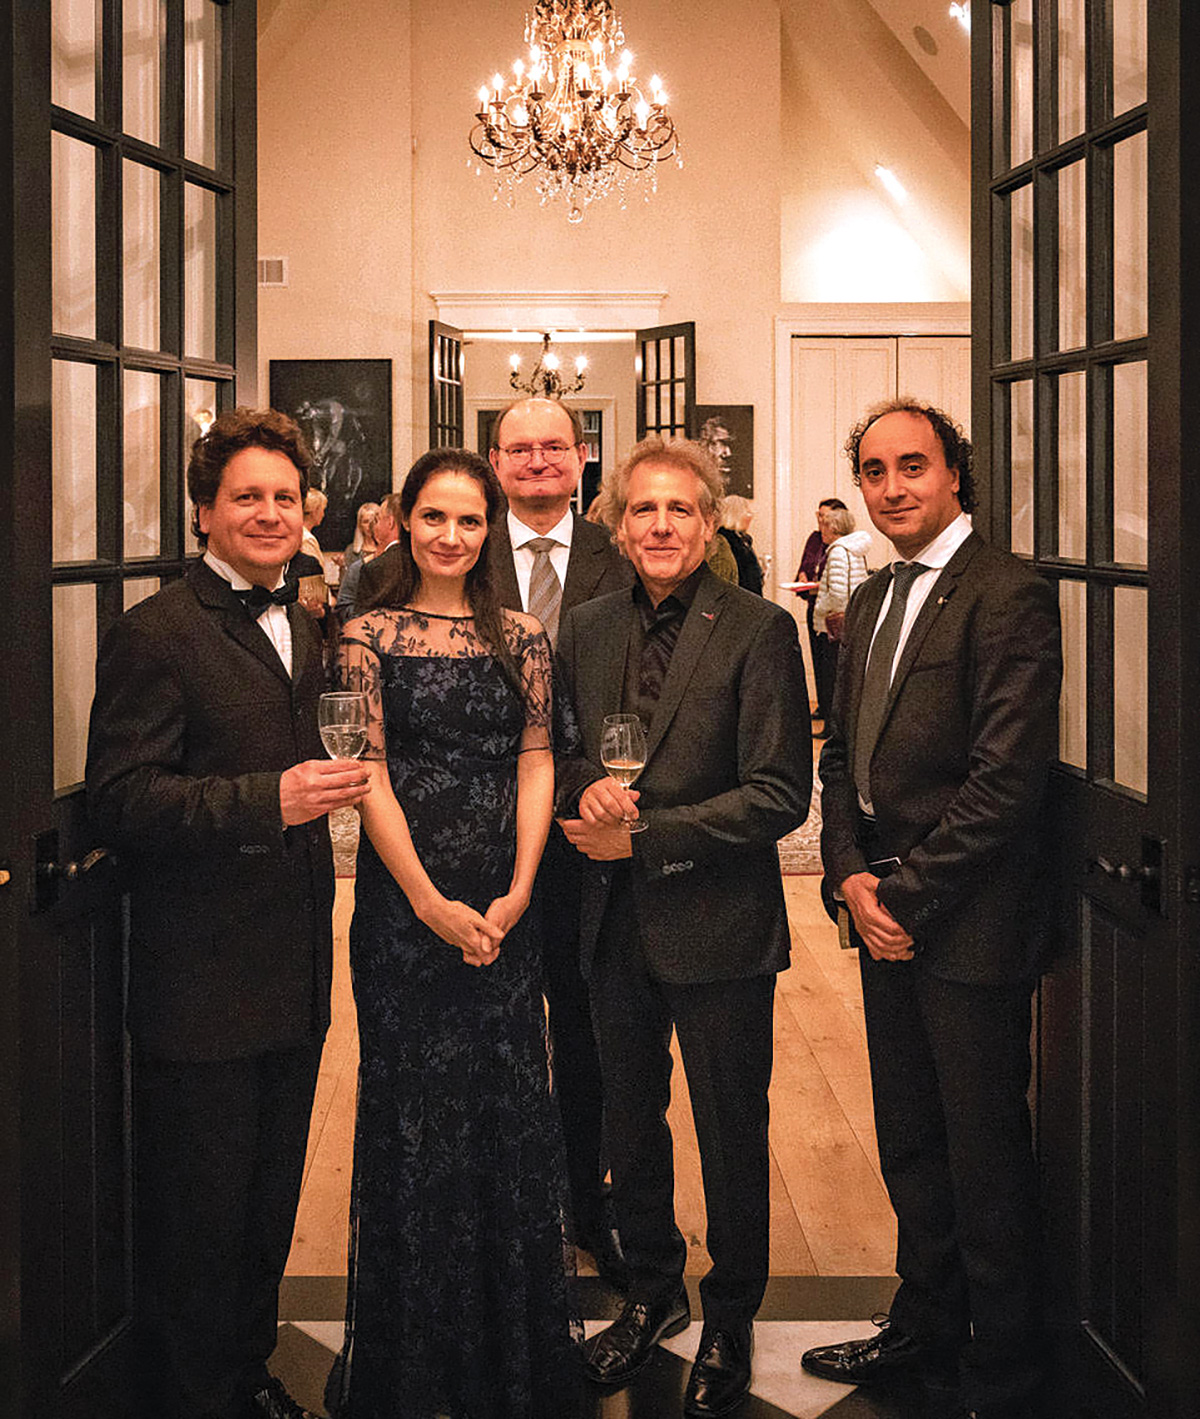 Daniel Vnukowski, Marta Potulska, Wolfgang Panhofer, Alexander Swete and Mario Hossen attended the gala at the Breakers House.